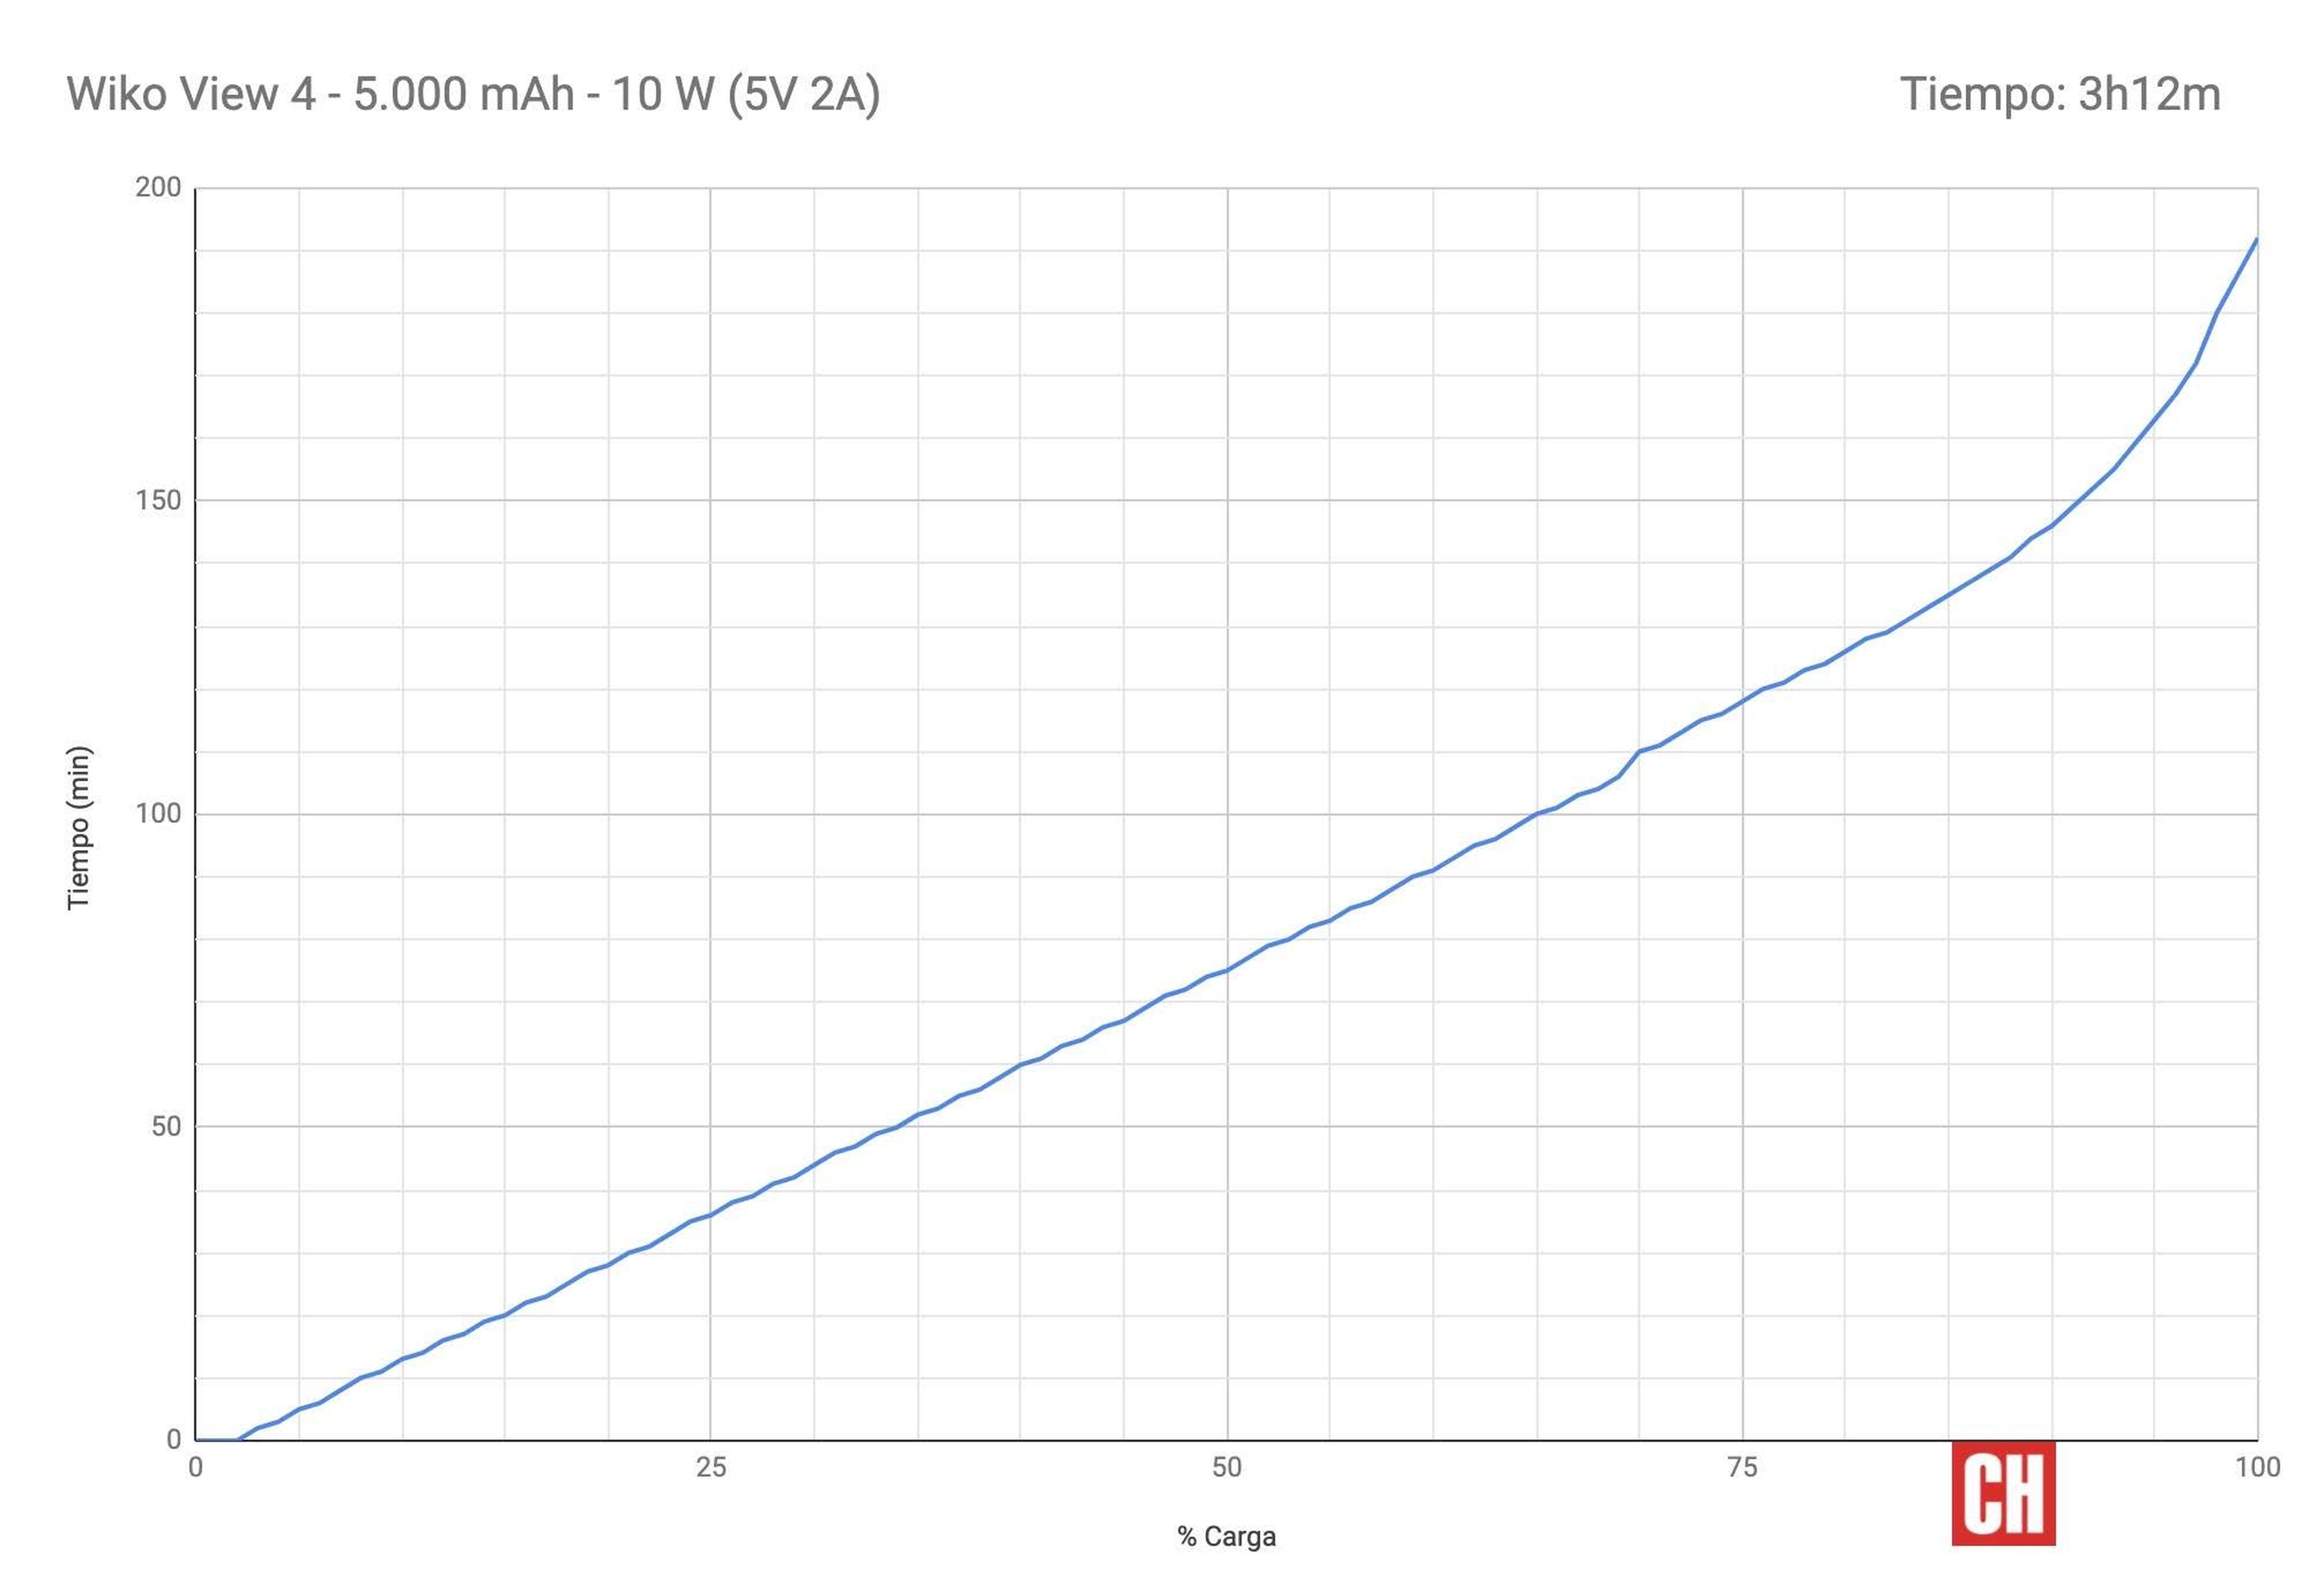 Evolución del nivel de batería del Wiko View4 durante la carga.